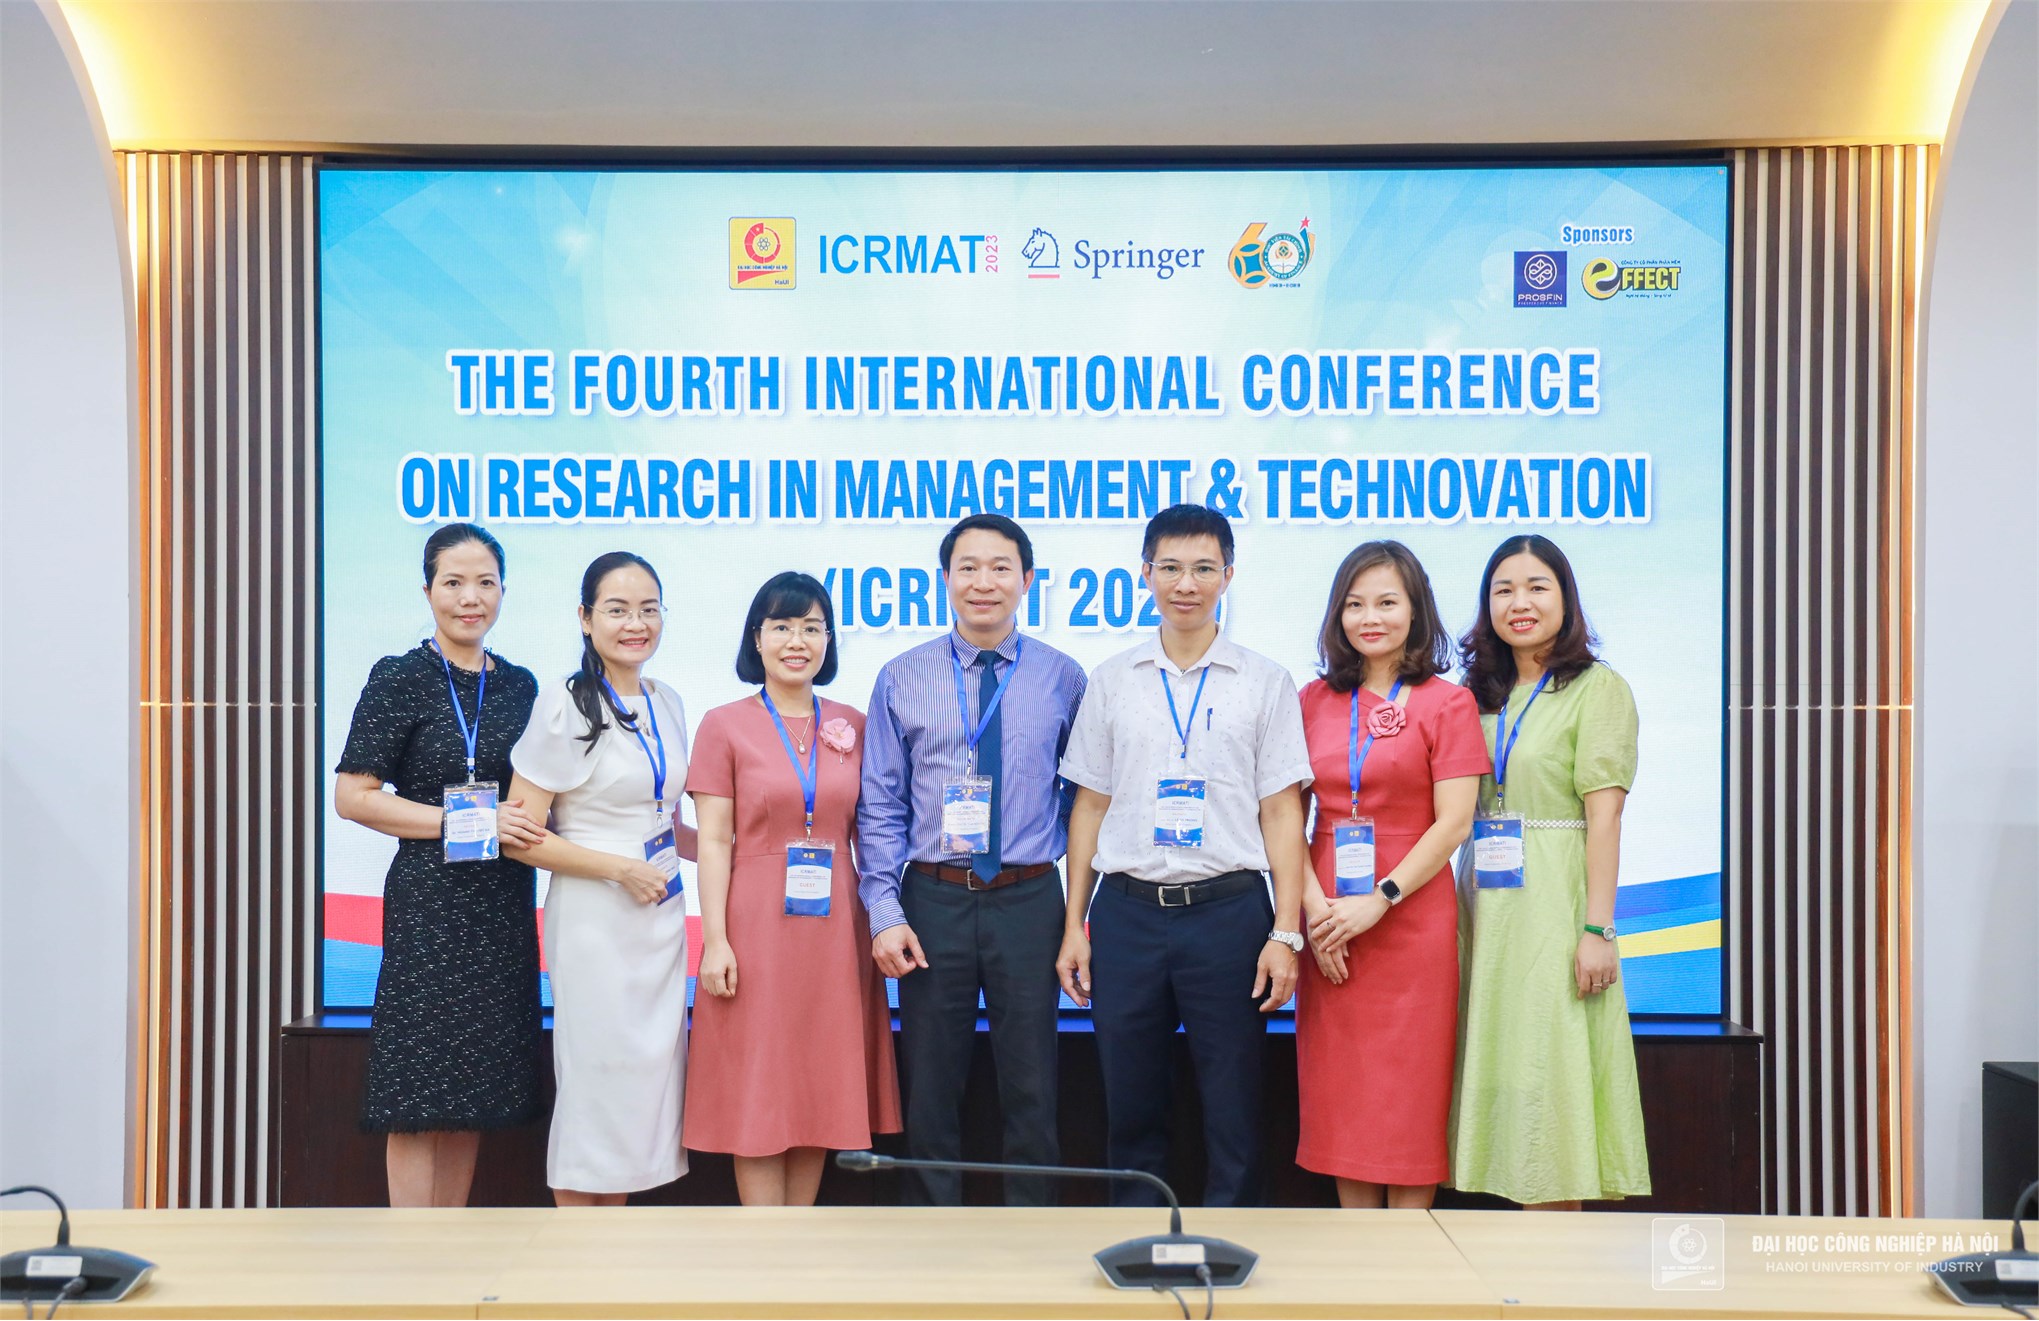 Hội thảo quốc tế ICRMAT 2023: Thúc đẩy những giải pháp công nghệ sáng tạo